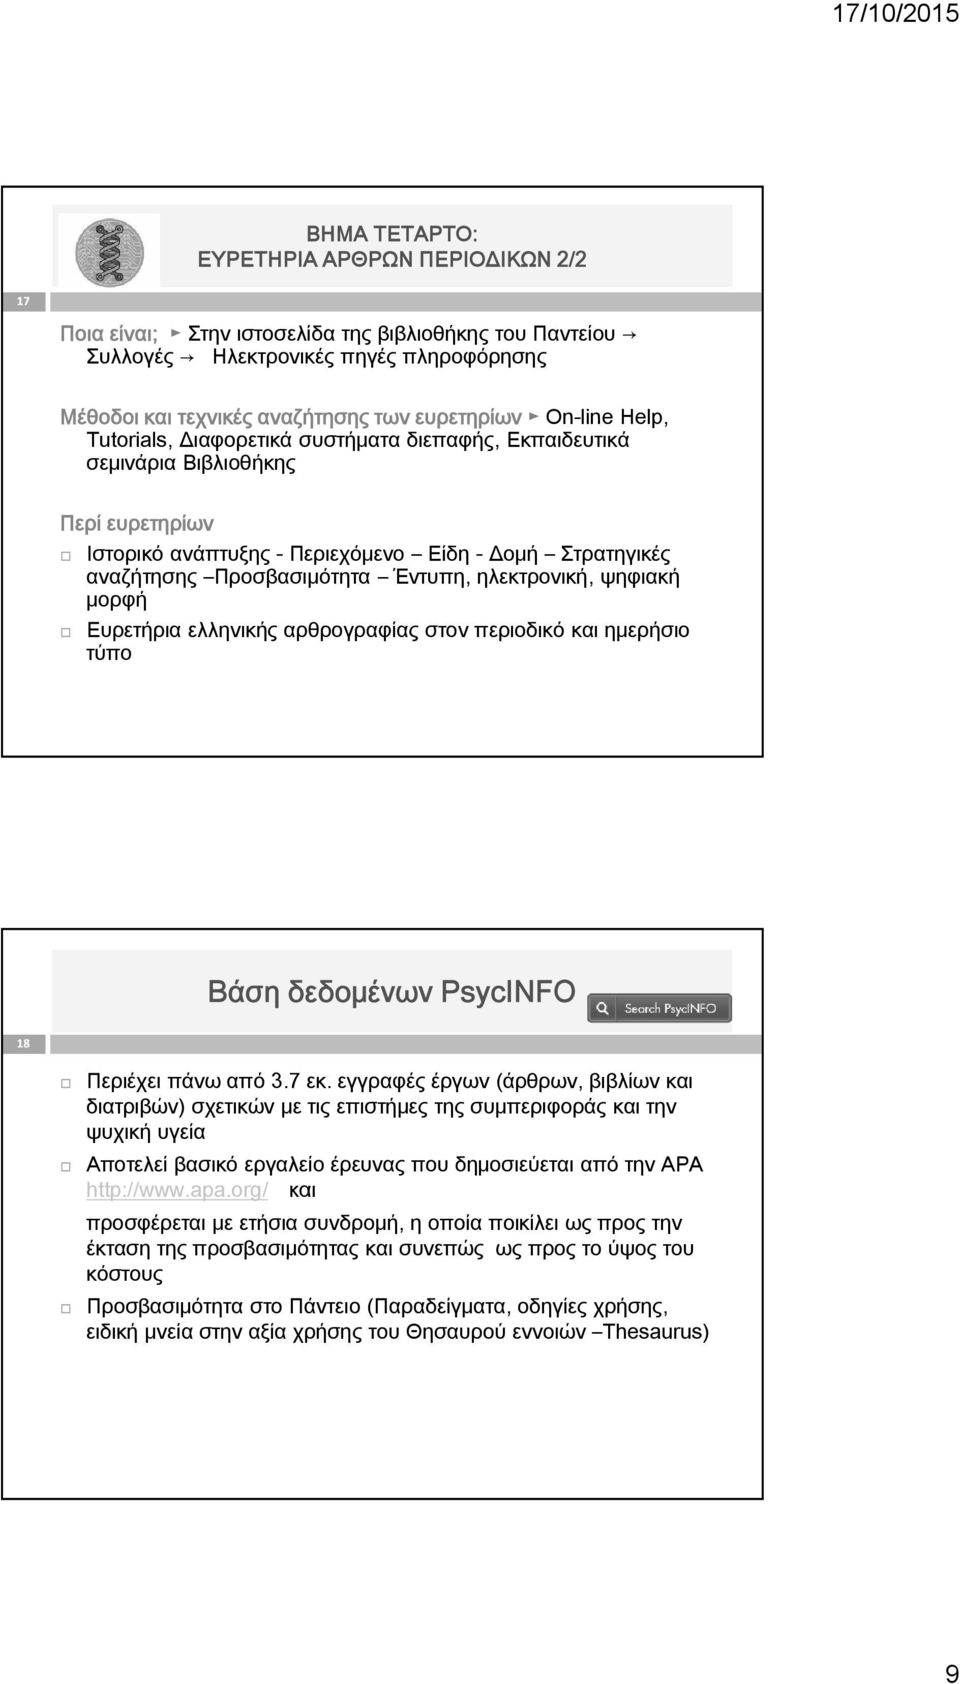 ηλεκτρονική, ψηφιακή μορφή Ευρετήρια ελληνικής αρθρογραφίας στον περιοδικό και ημερήσιο τύπο Βάση δεδομένων PsycINFO 18 Περιέχει πάνω από 3.7 εκ.